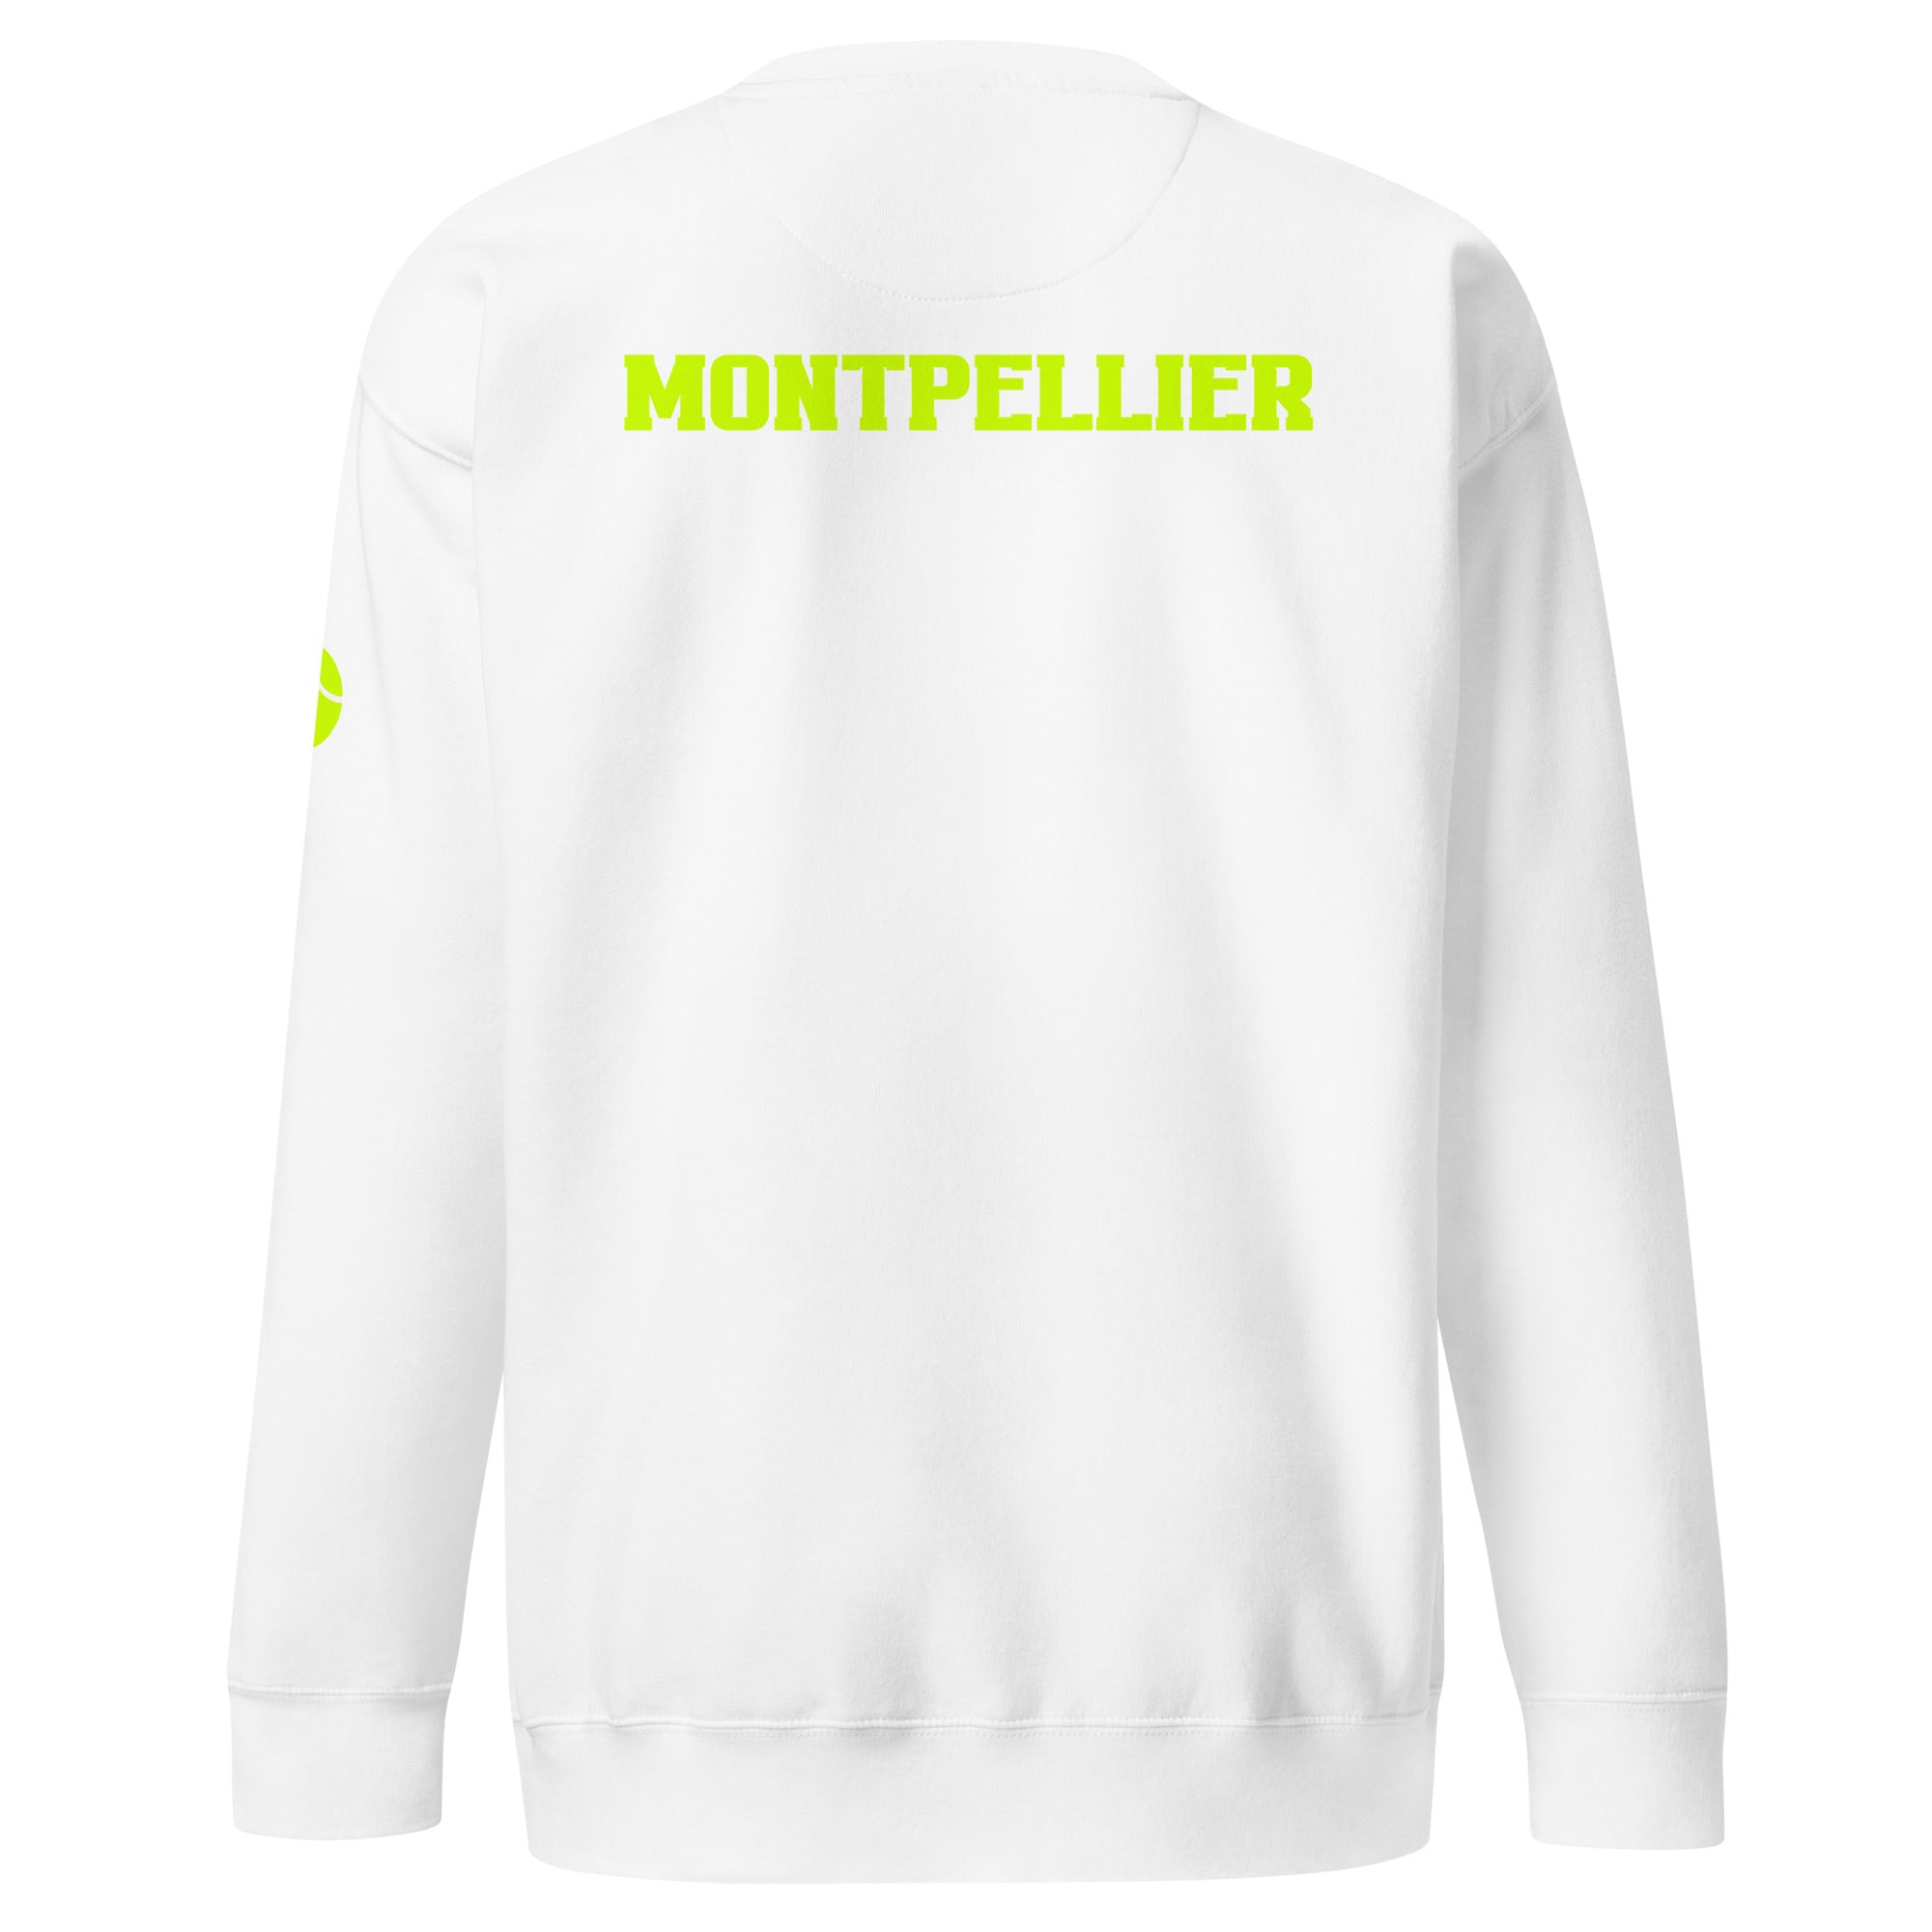 Unisex Premium Sweatshirt - Tennis Masters Montpellier - GRAPHIC T-SHIRTS